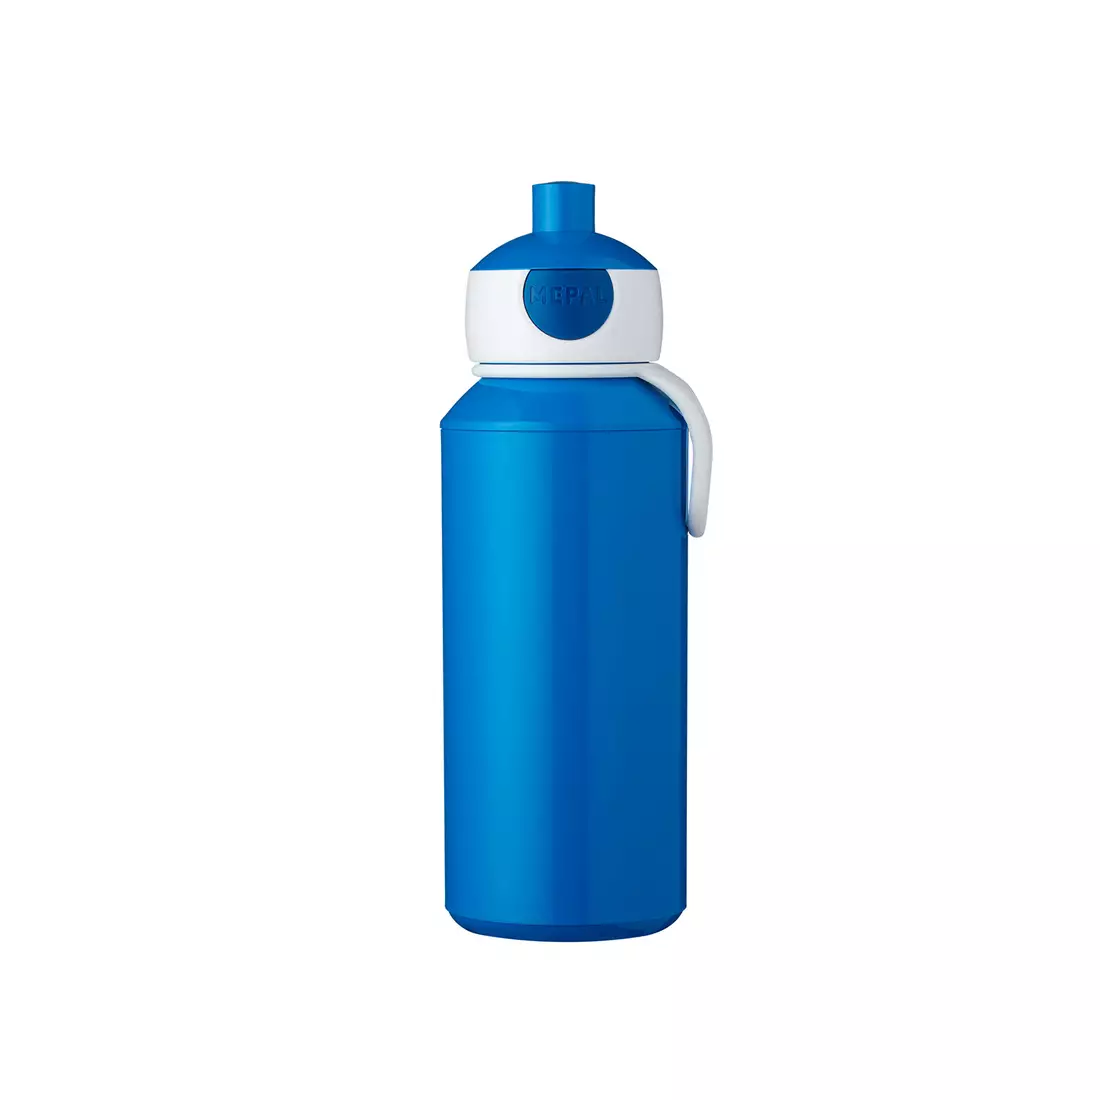 MEPAL POP-UP CAMPUS wasserflasche für kinder 400 ml blau